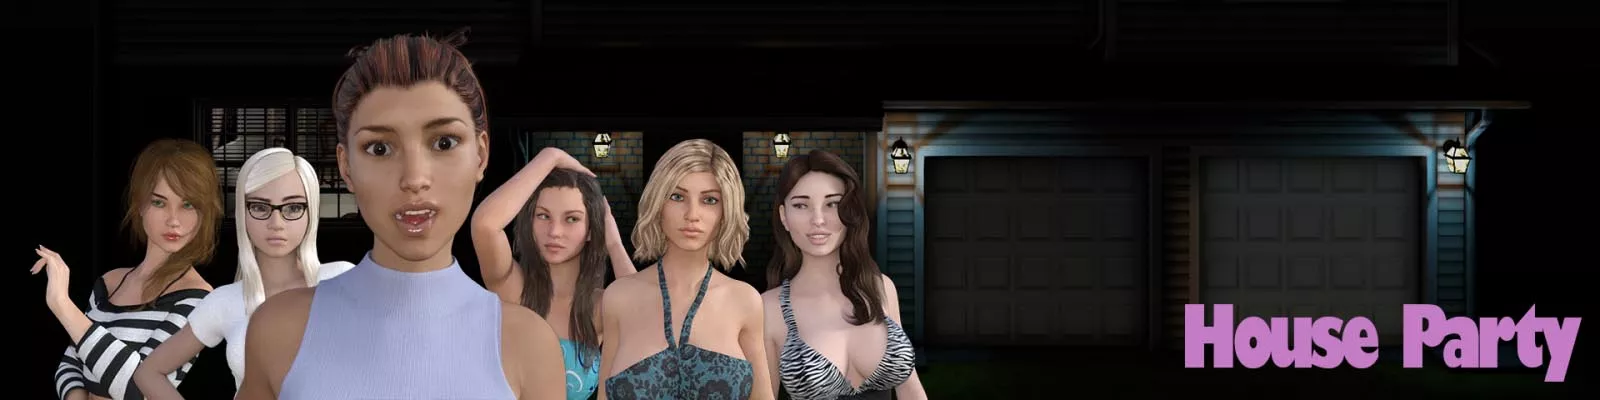 House Party 3d jogo de sexo